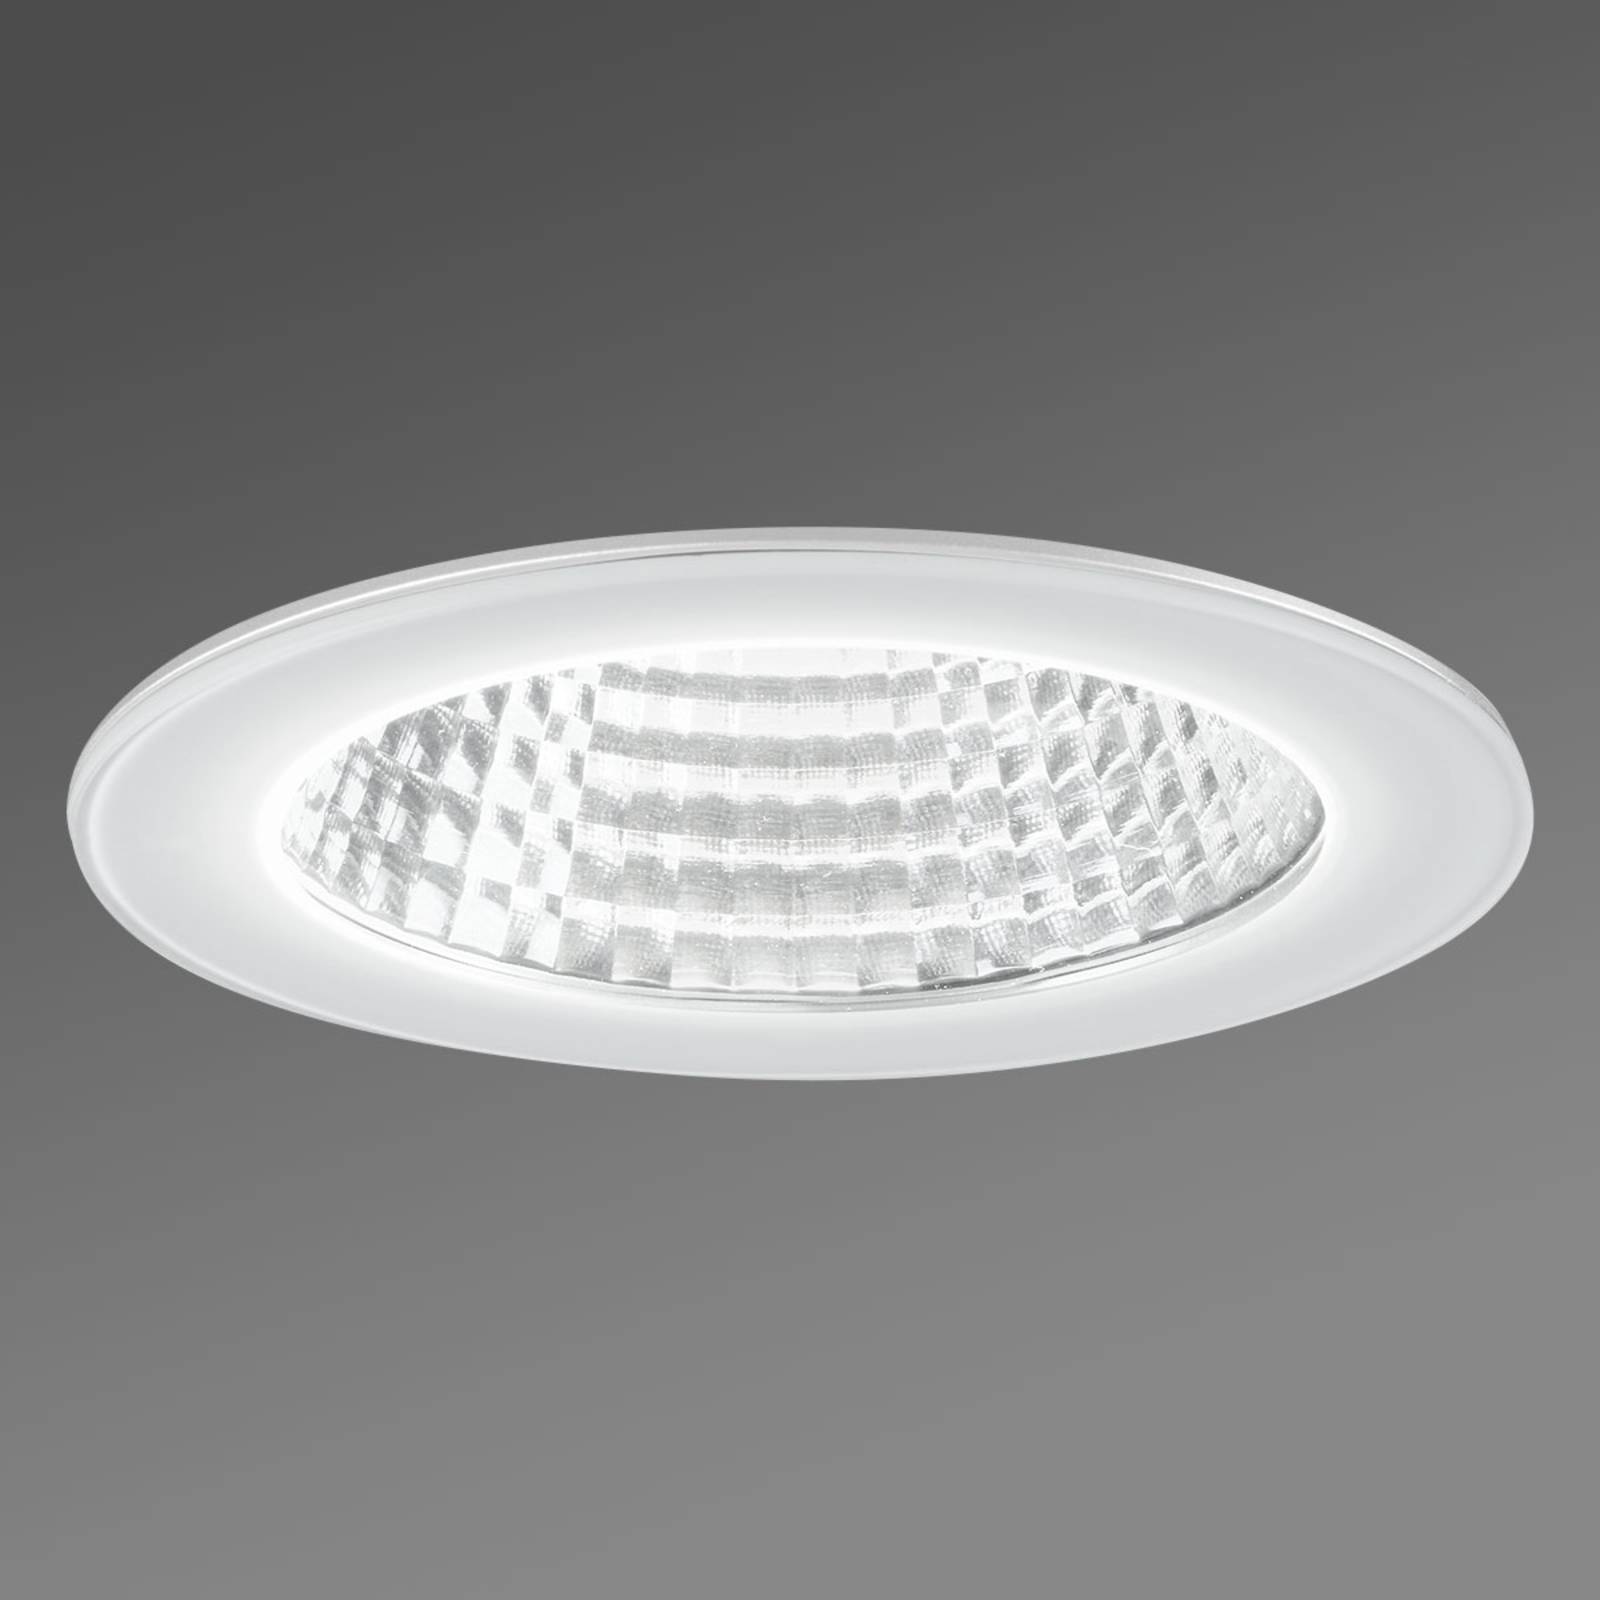 Egger Licht Lampe encastrable LED IDown 26 anti-éclaboussures